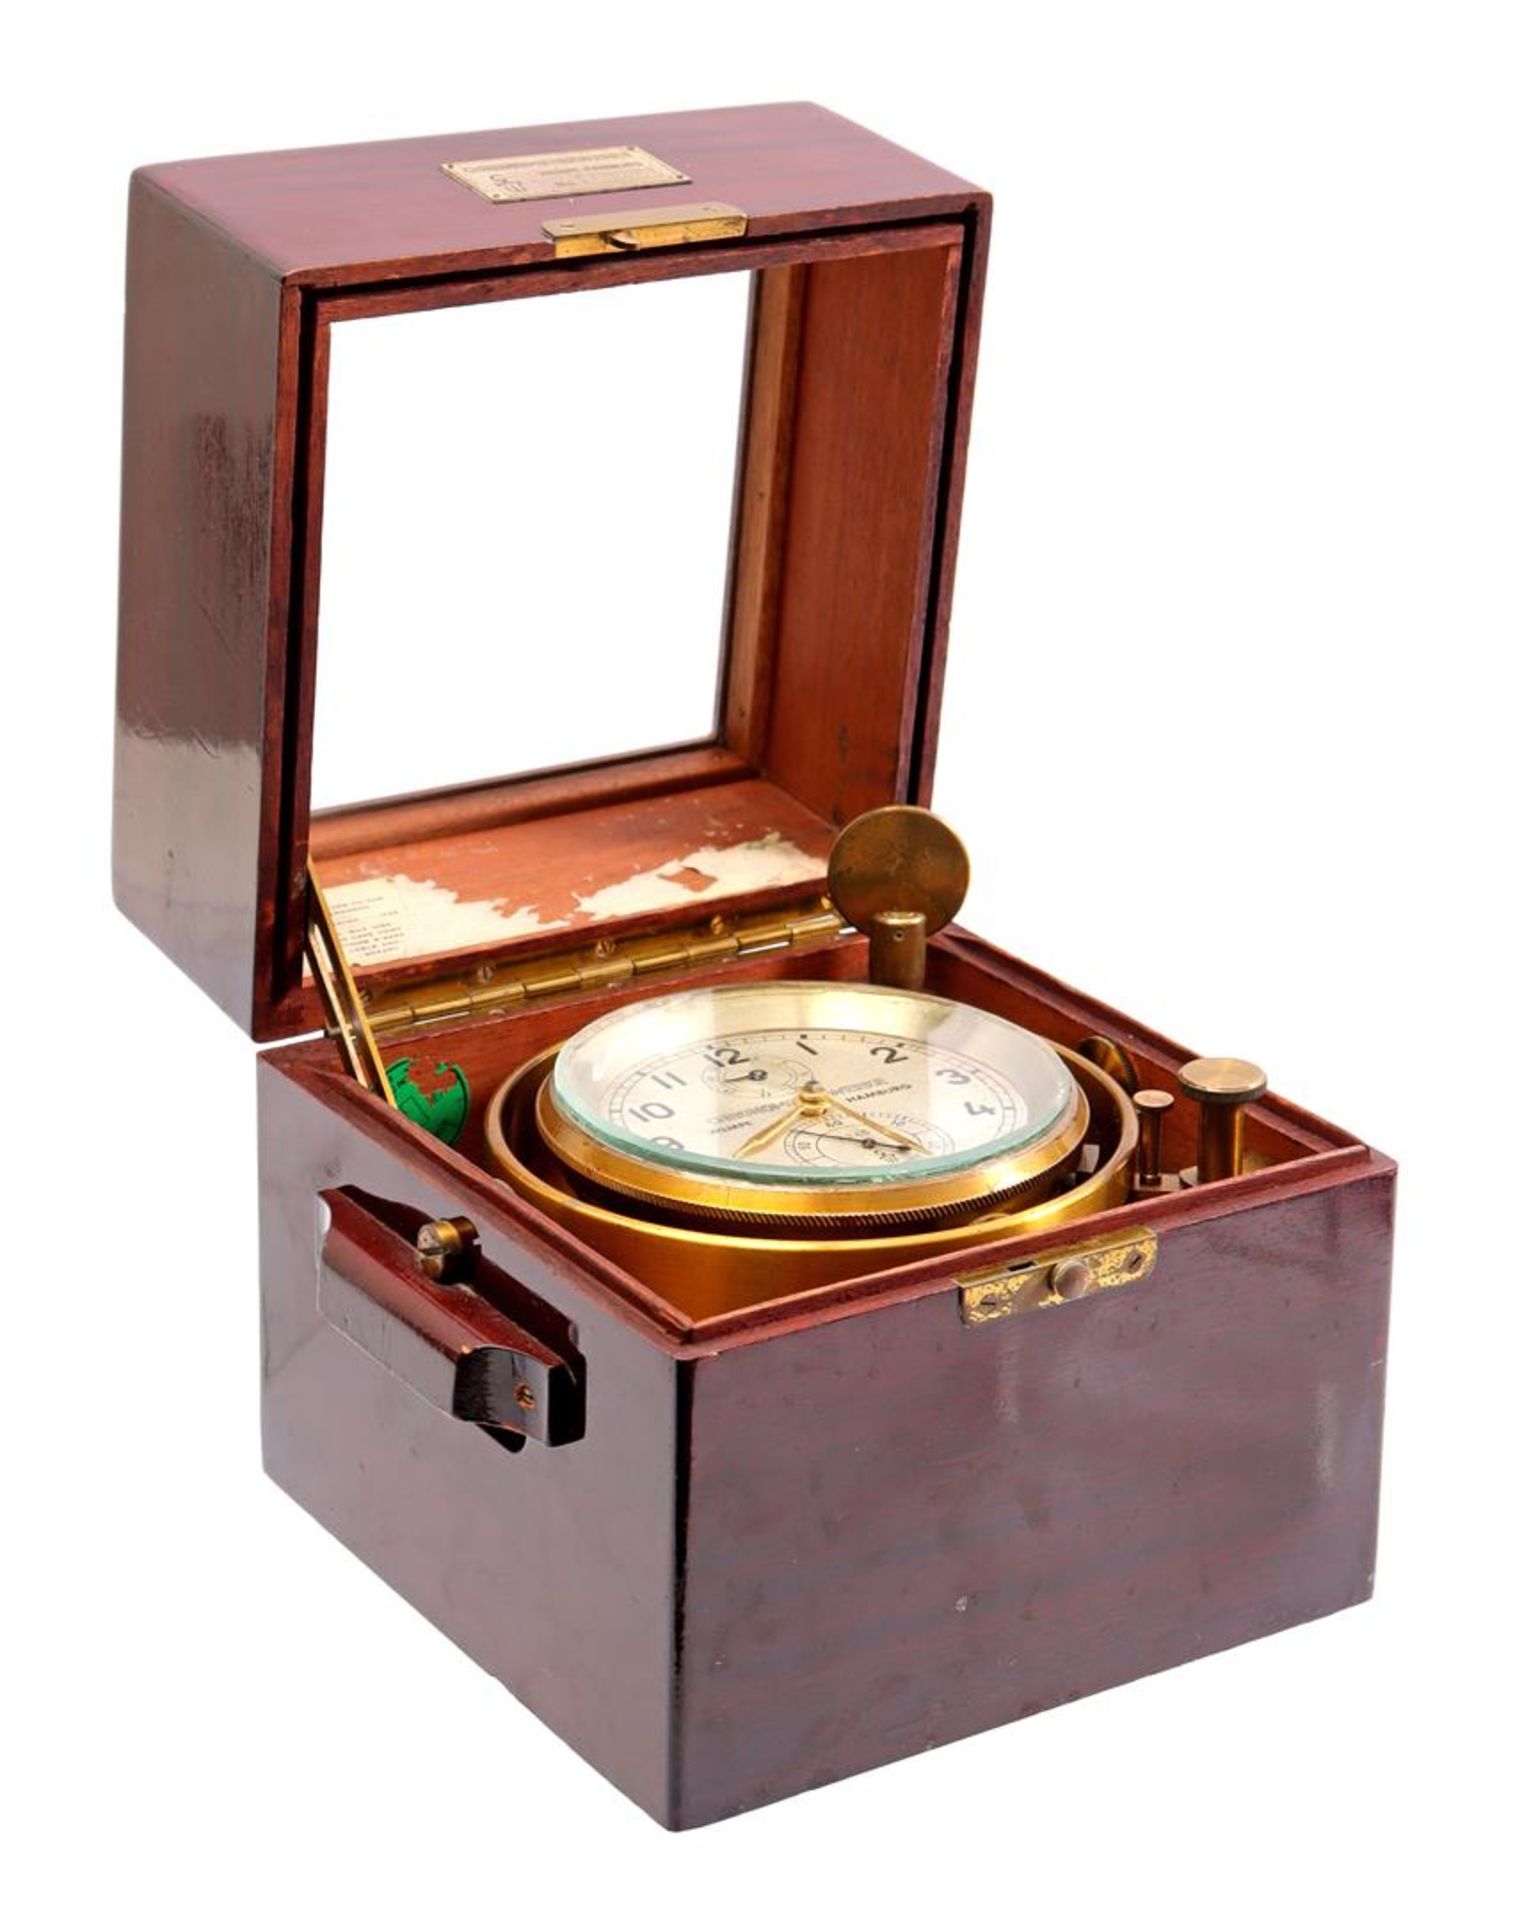 Wempe Chronometerwerke No. 6345, brass maritime chronometer 